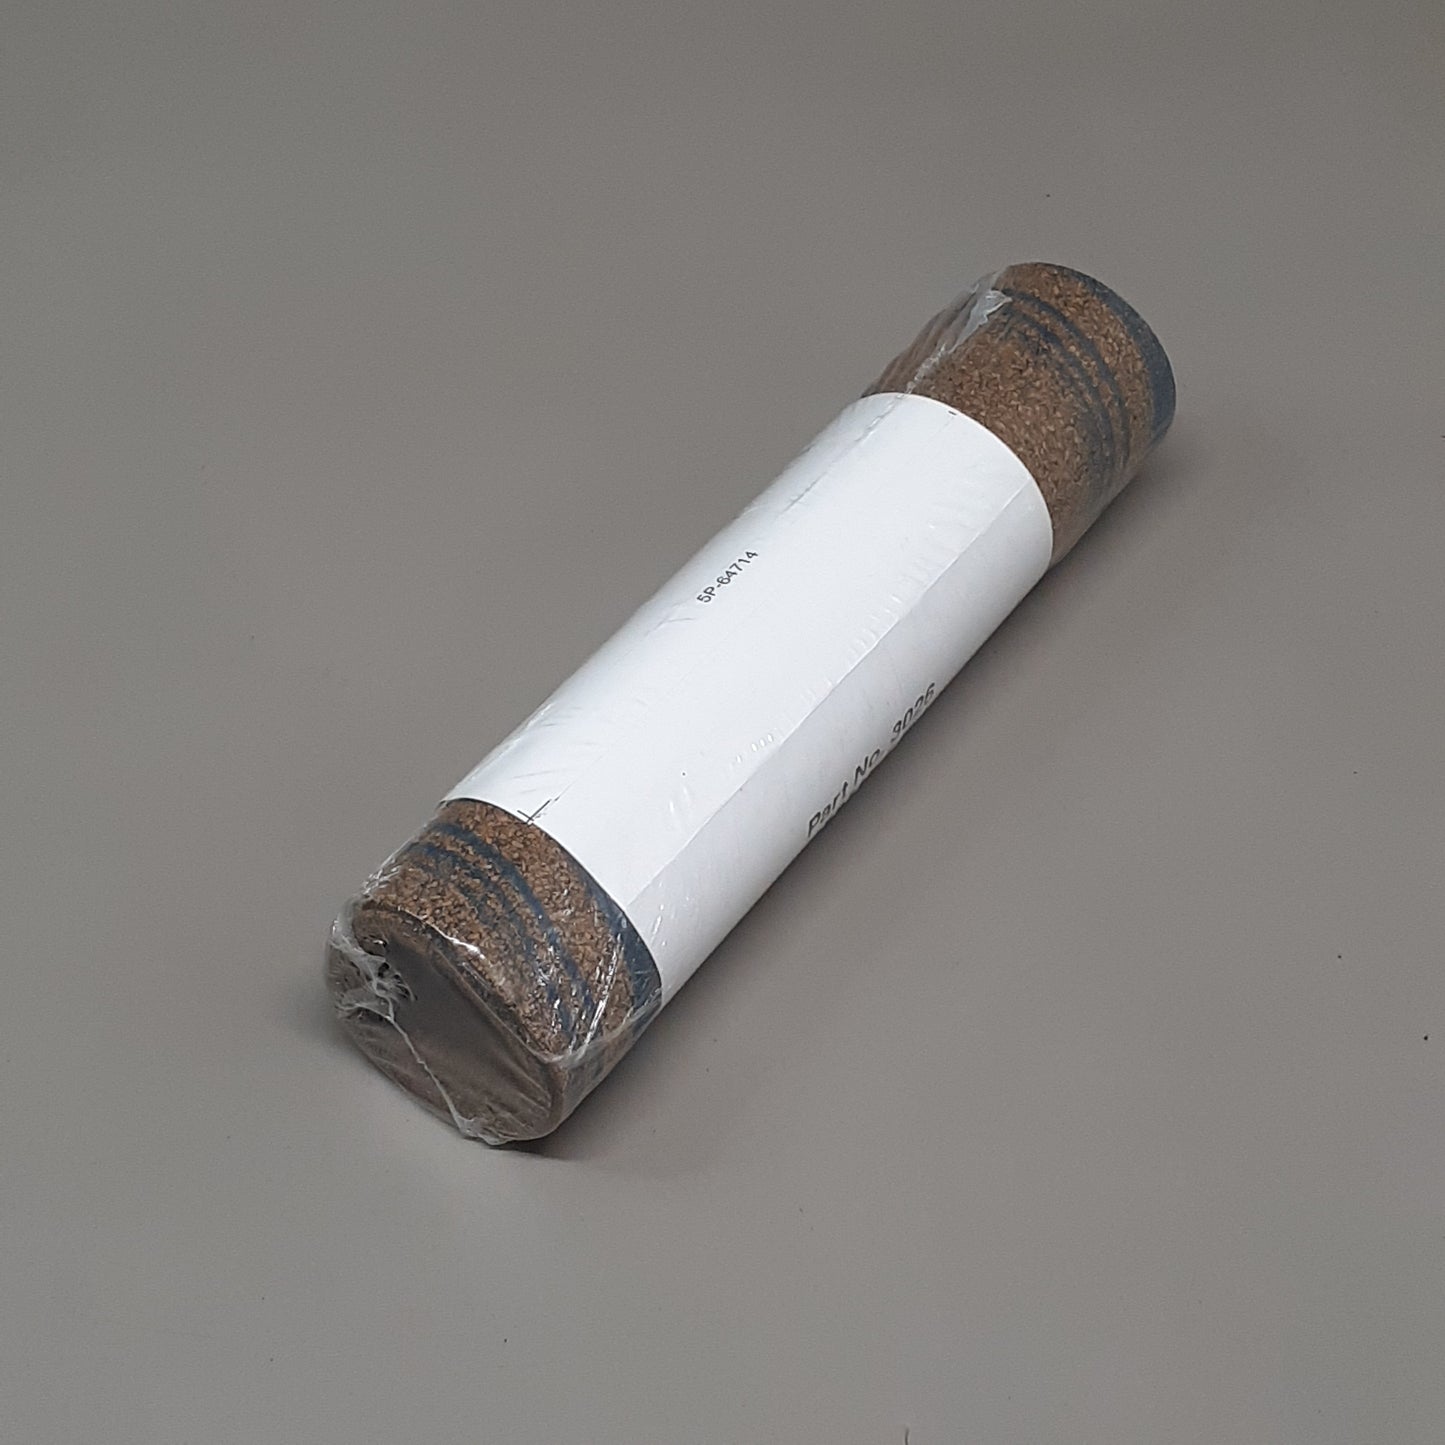 FEL-PRO Cork-Rubber Sheet Gasket Materials 3026 (New)